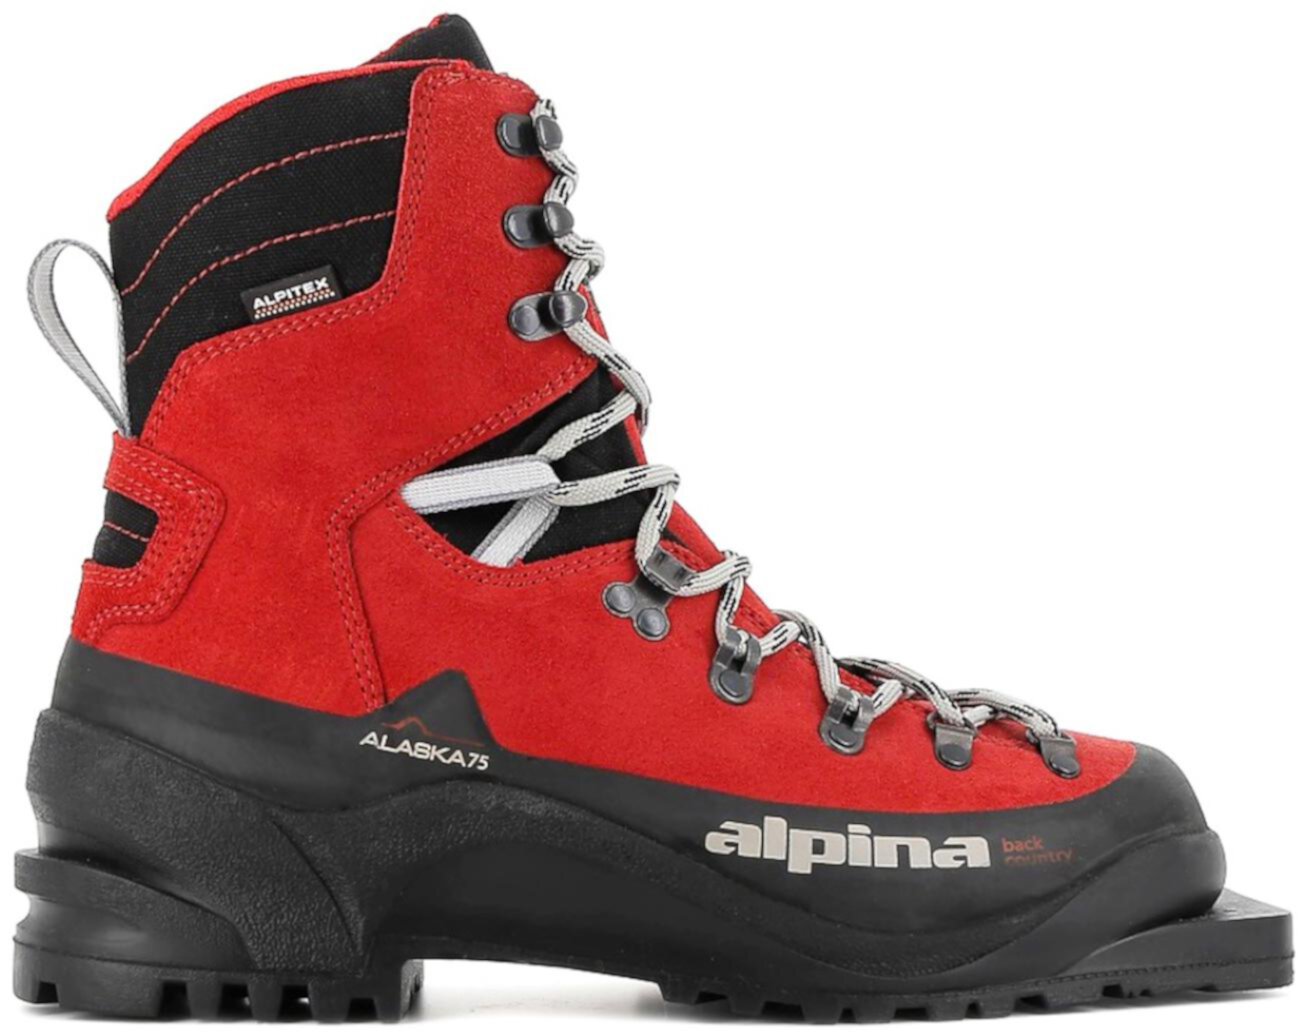 Ботинки для беговых лыж Alaska 75 Alpina